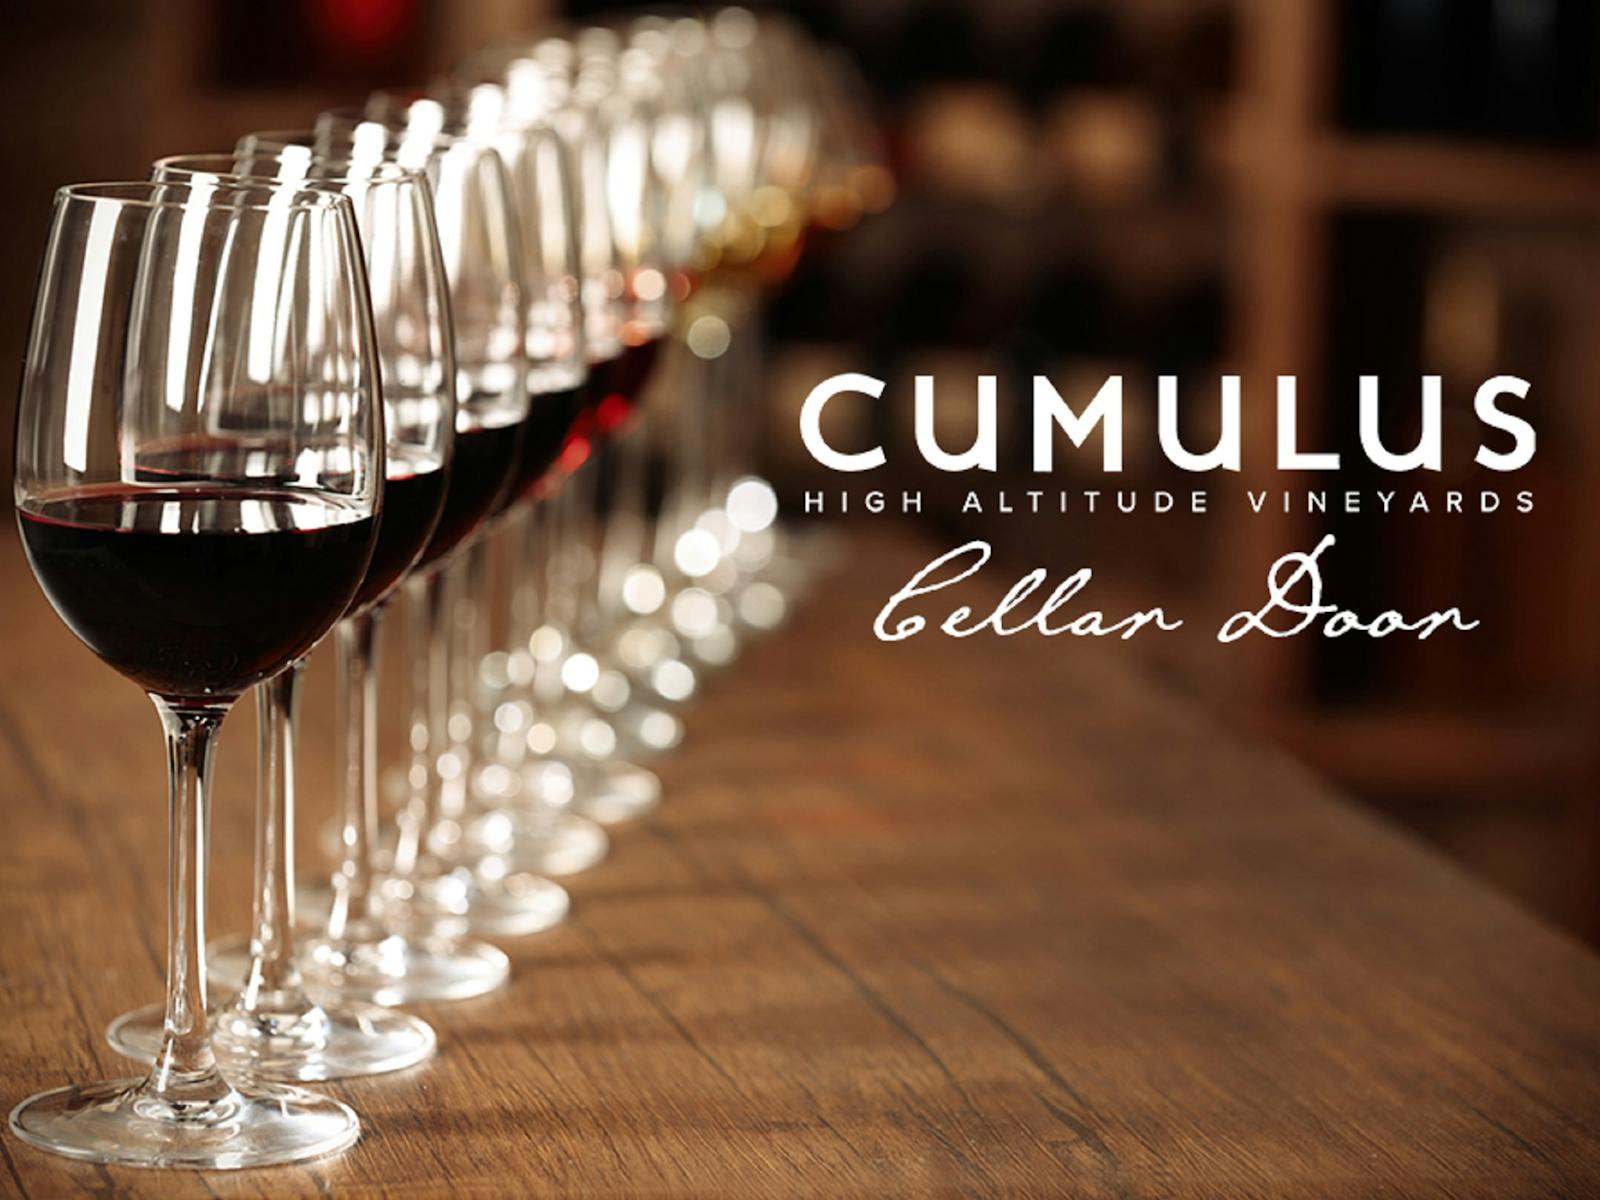 Image for Cumulus Vineyards Pop Up Cellar Door